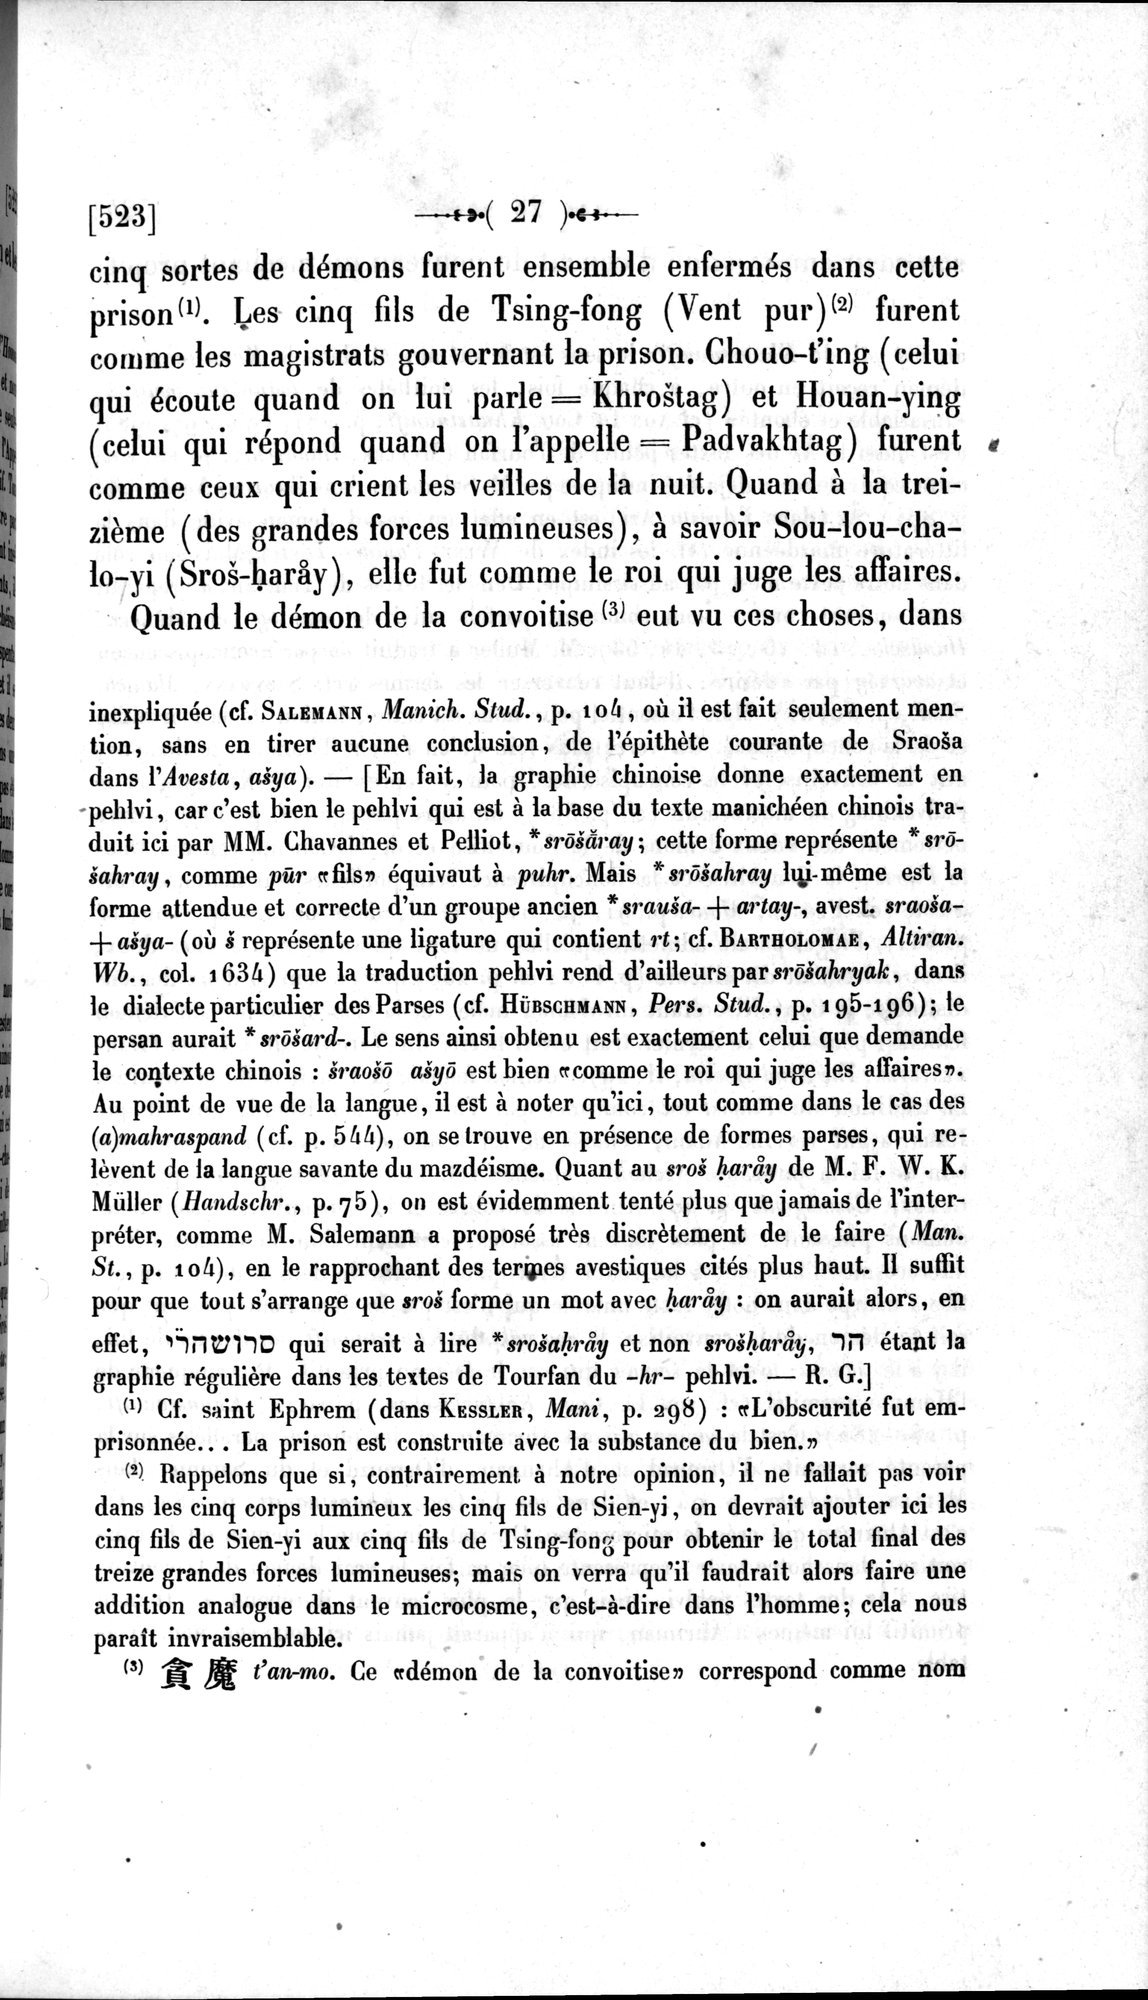 Un traité manichéen retrouvé en Chine : vol.1 / Page 37 (Grayscale High Resolution Image)